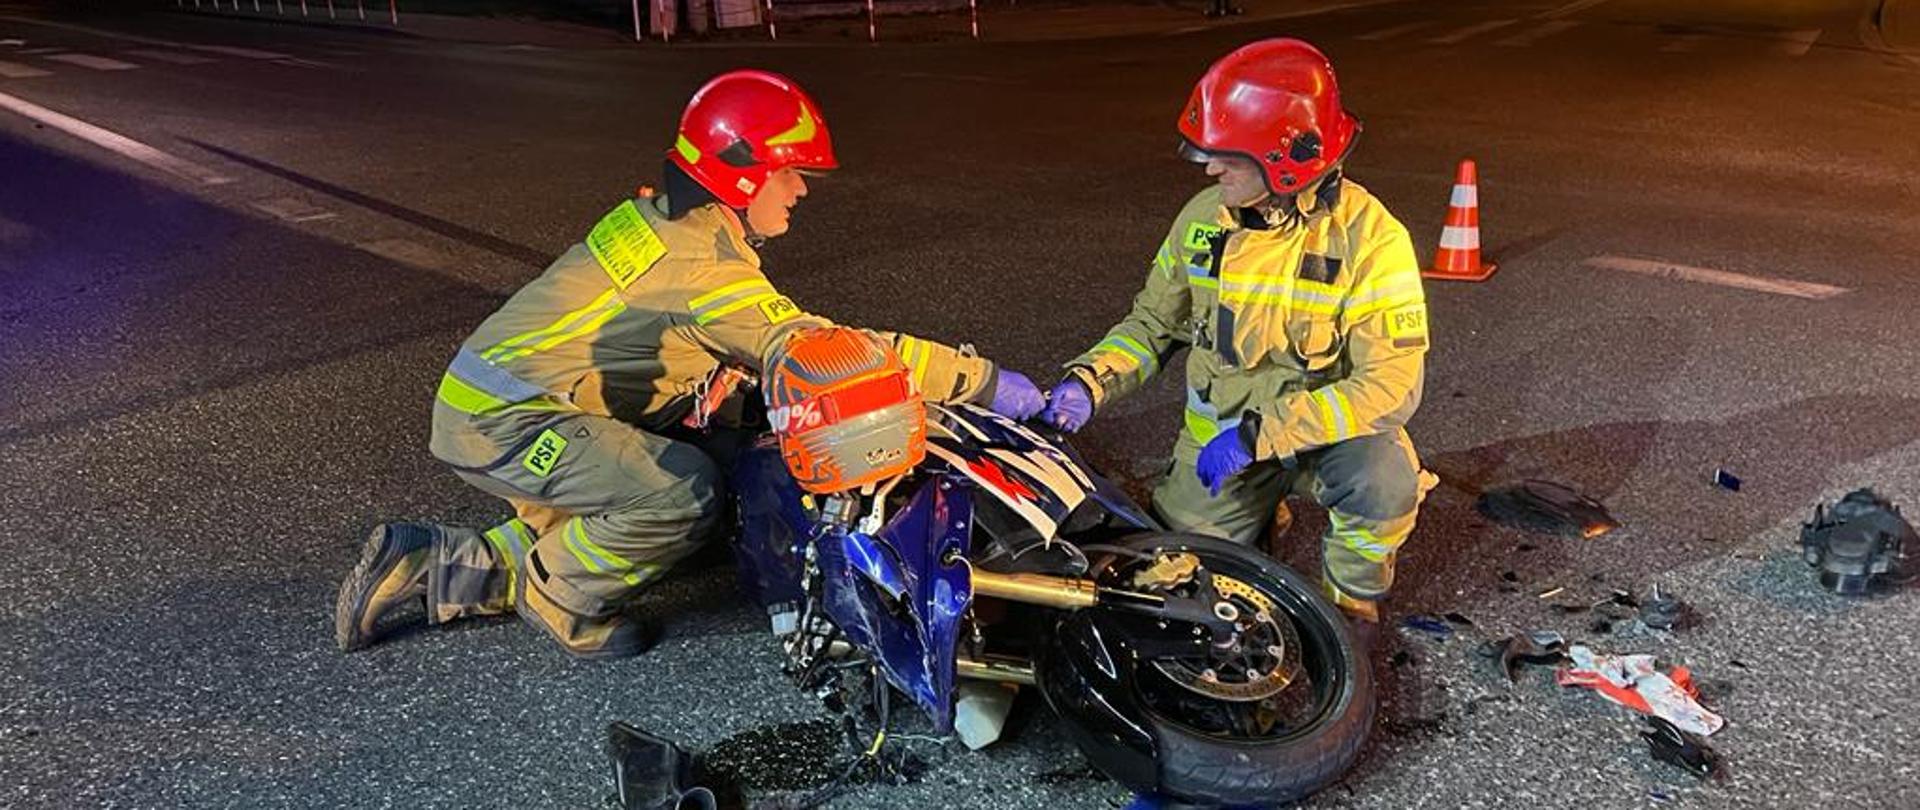 Strażacy prowadza czynności przy leżącym na drodze motocyklu